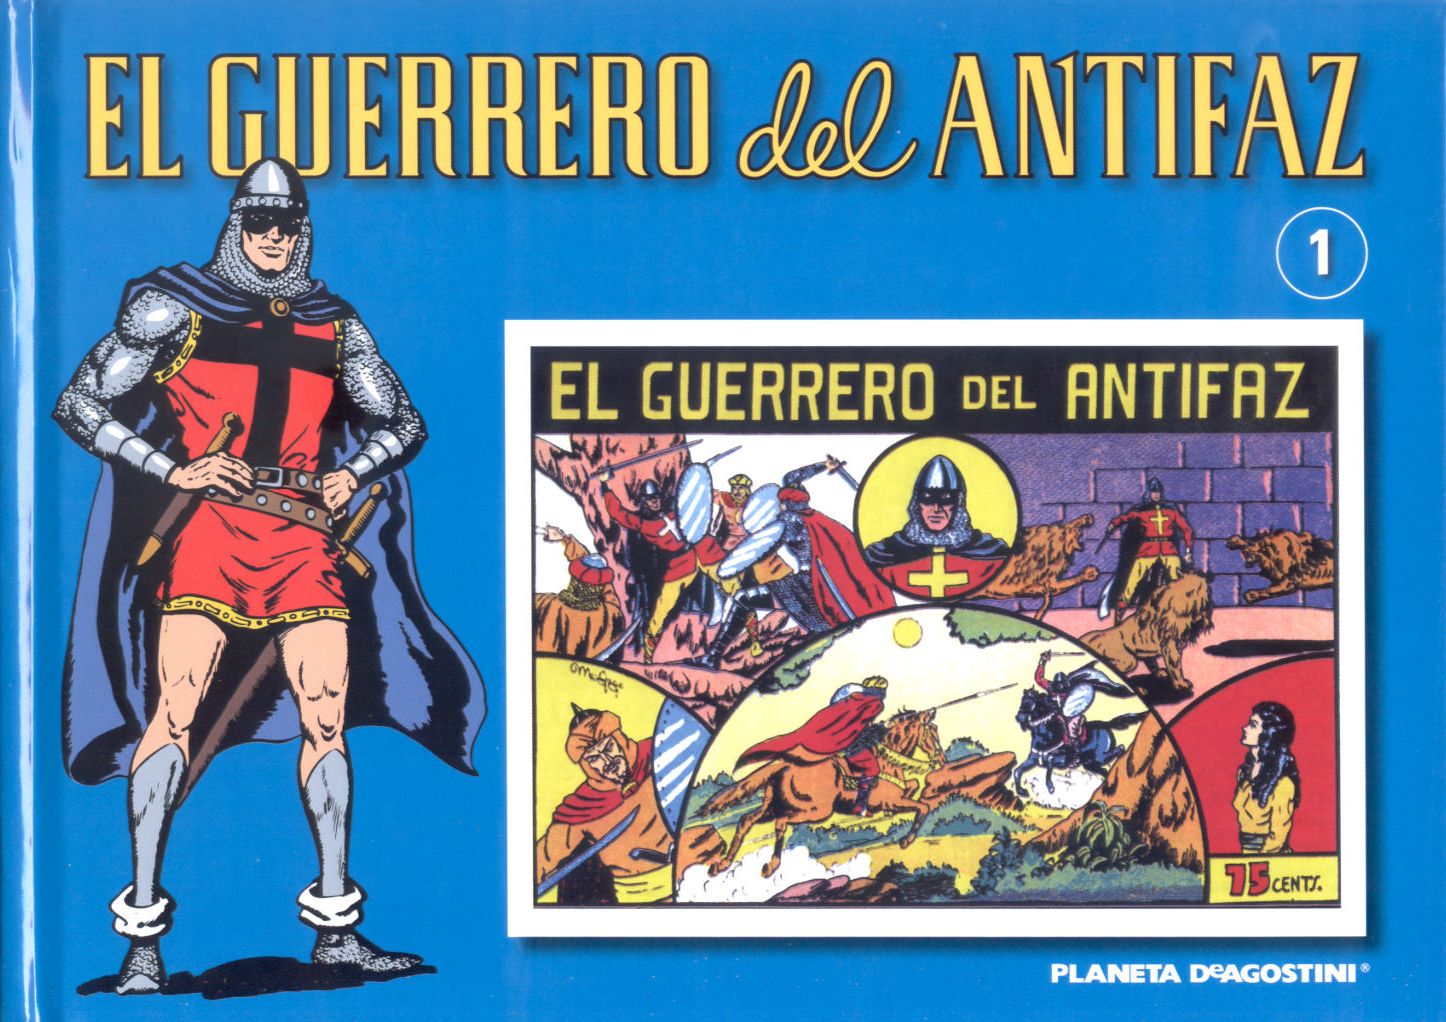 El Guerrero Del Antifaz  dans Tebeos Es. guerreroPor